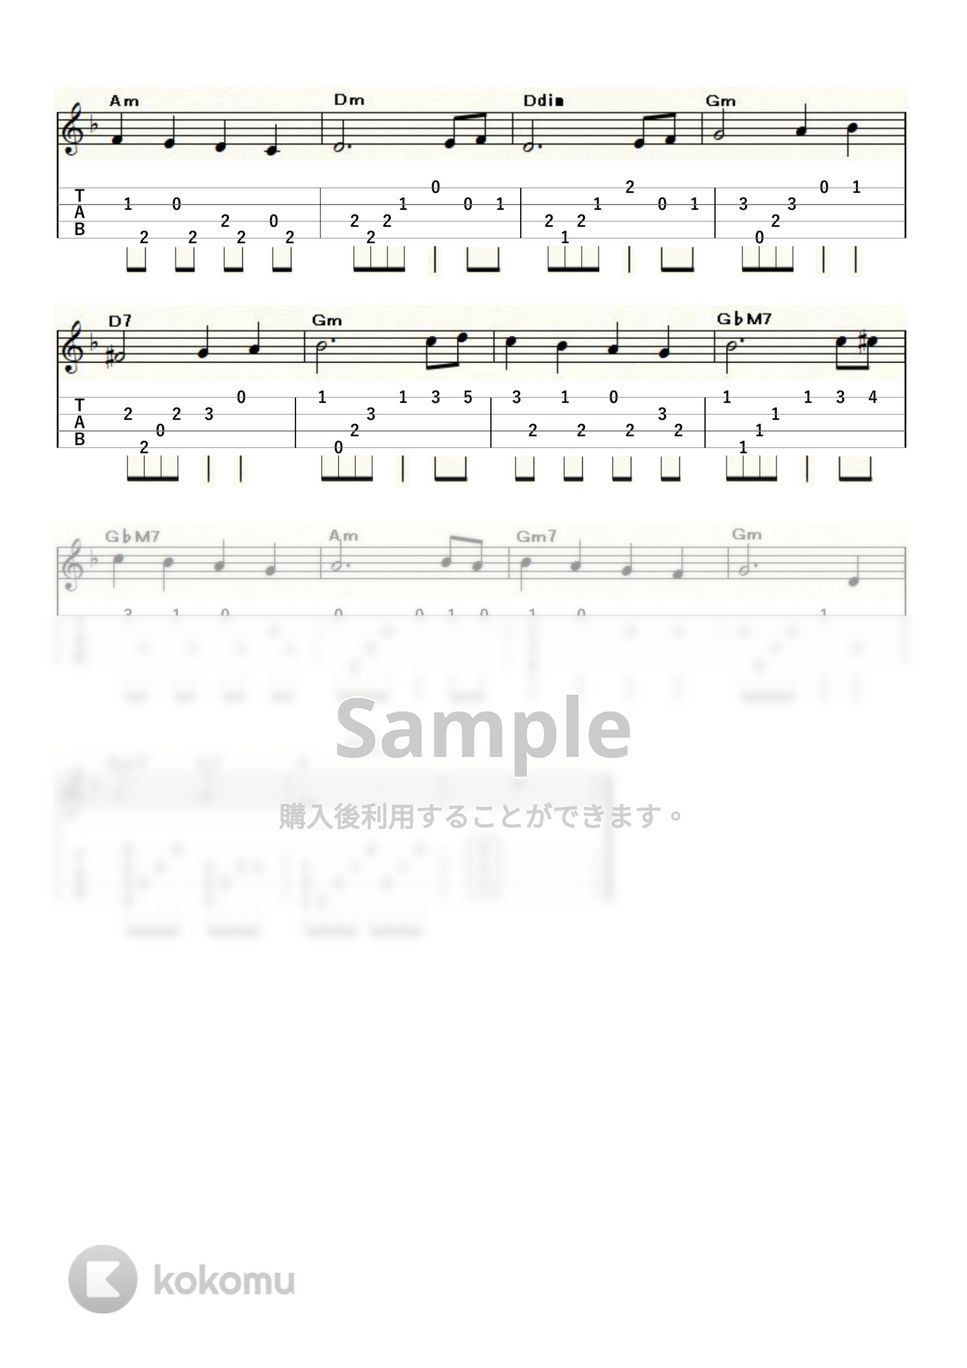 チャップリン - スマイル (ｳｸﾚﾚｿﾛ / Low-G / 初級) by ukulelepapa